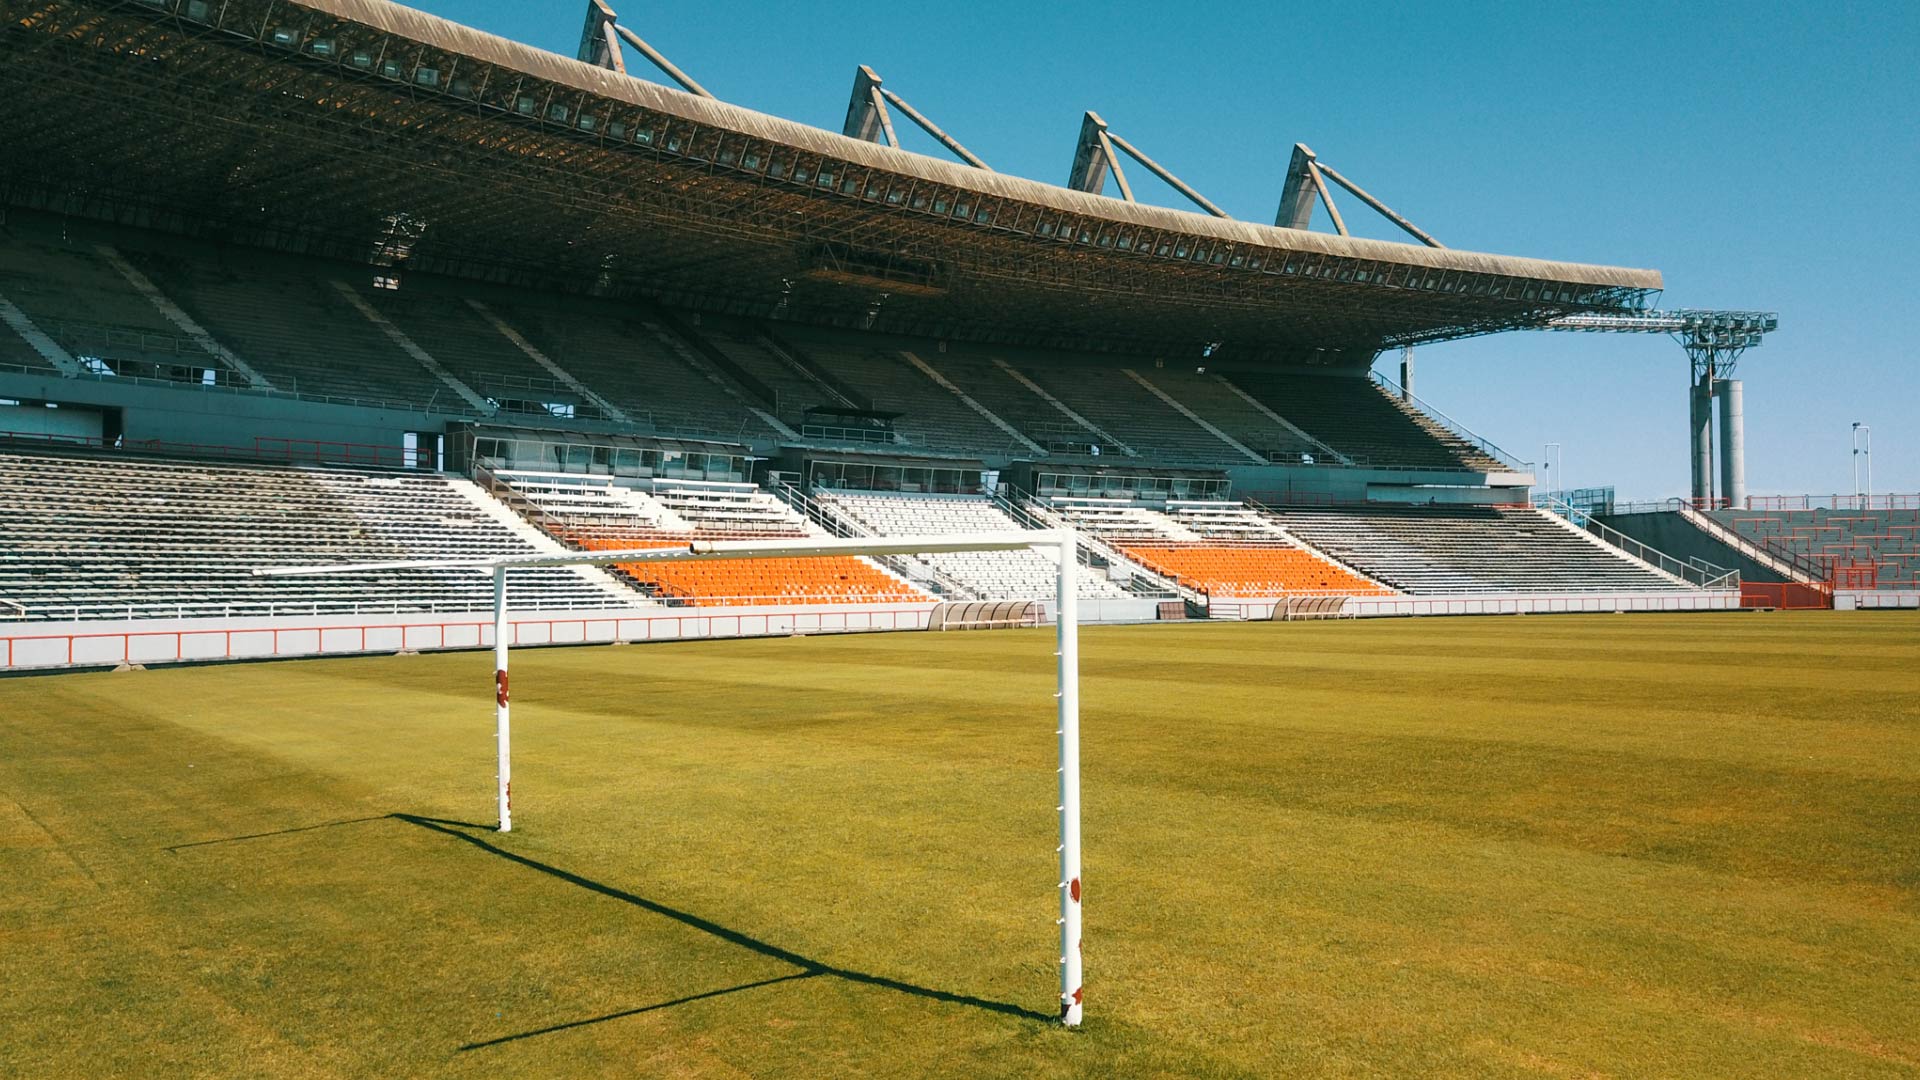 El arco sin red, el pasto son líneas y la tribuna techada que desde septiembre de 2021 fue inhabilitada una semana antes de que volvieran los hinchas a los estadios después de la pandemia (Fotos Christian Heit)